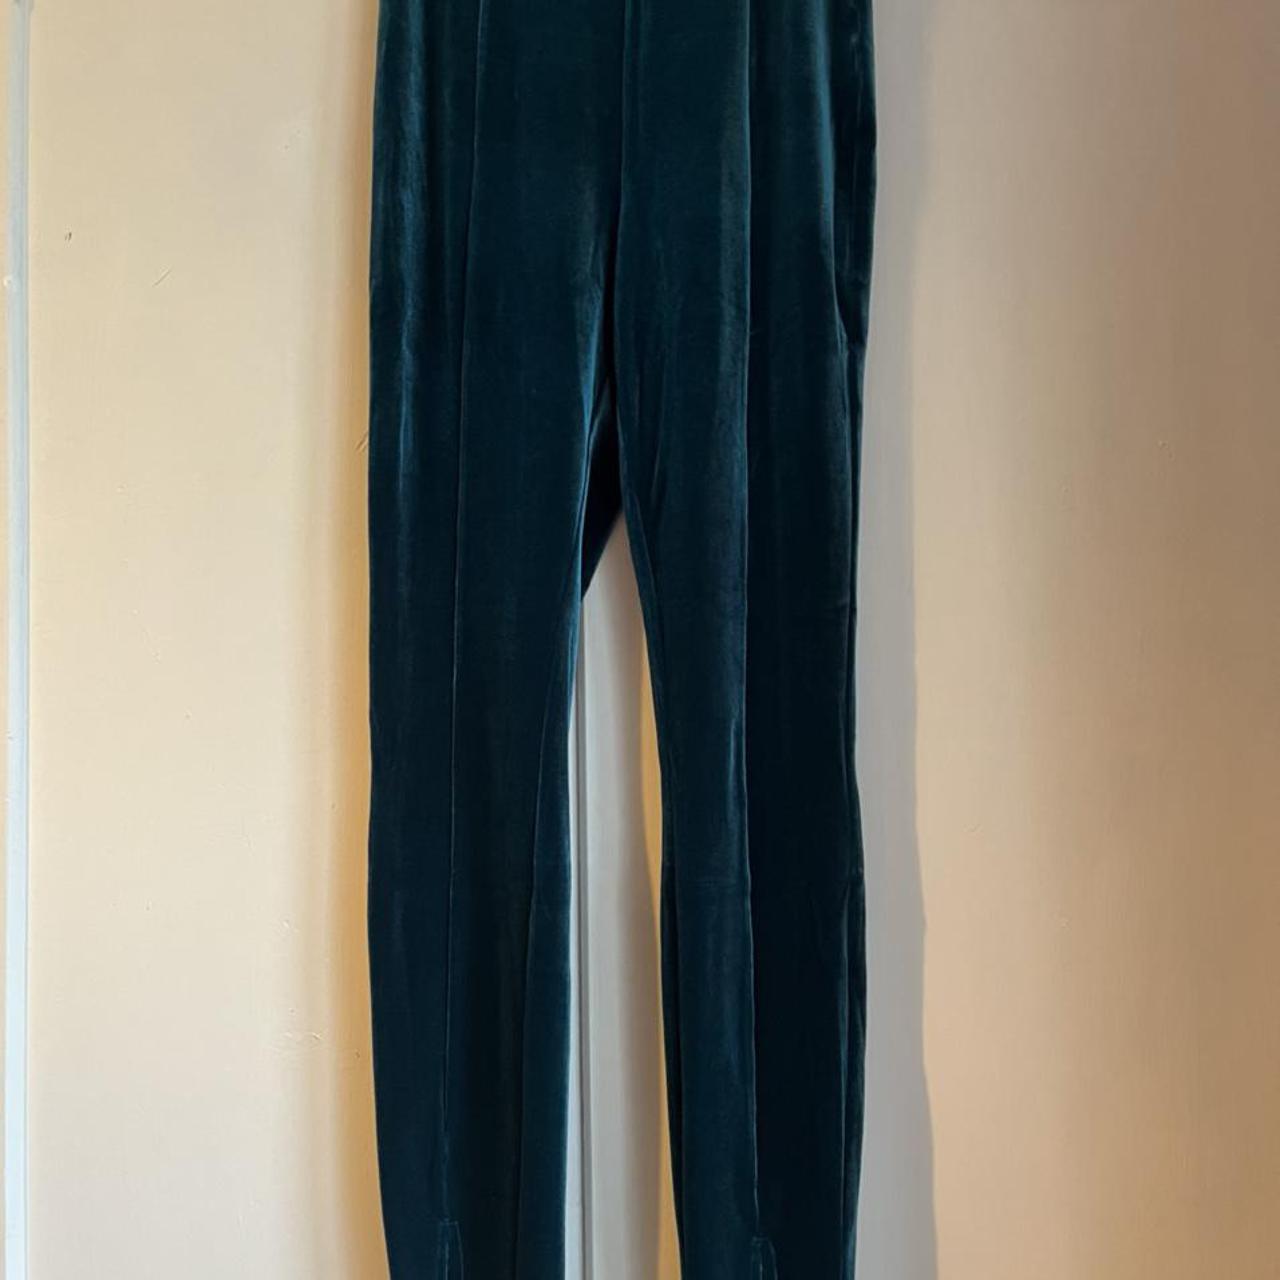 Extro & Vert slouchy wide leg trousers in navy sapphire velvet co-ord | ASOS